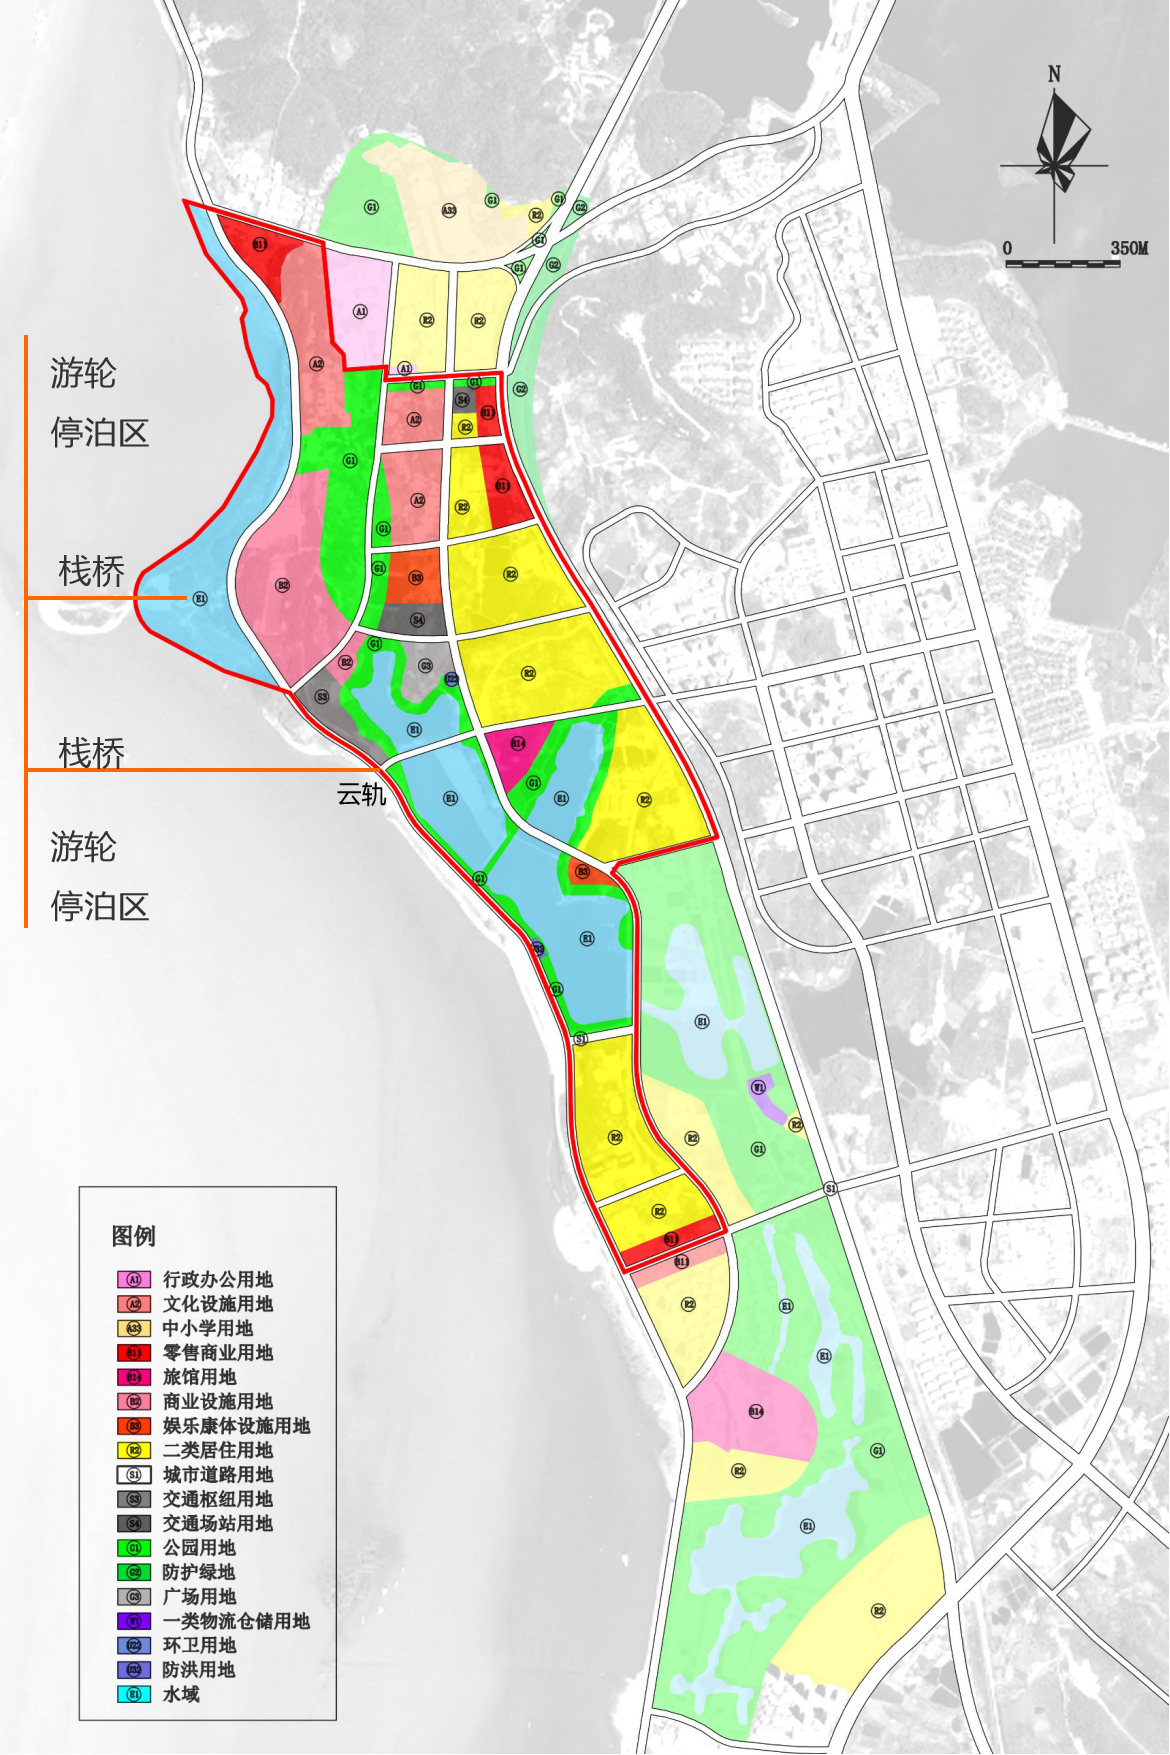 洞庭湖邮轮母港公园概念规划